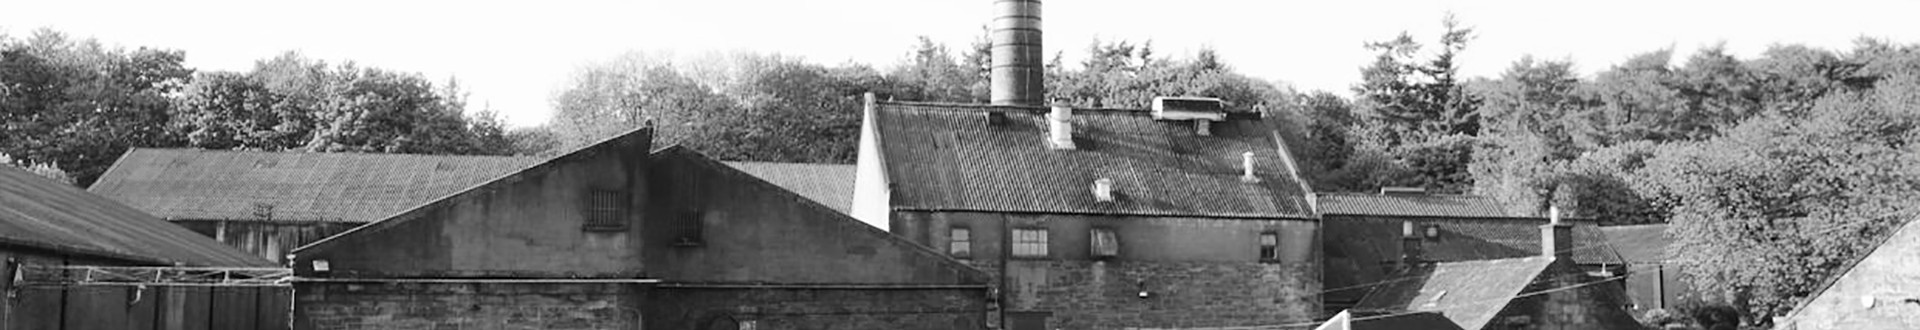 Glencadam Distillery